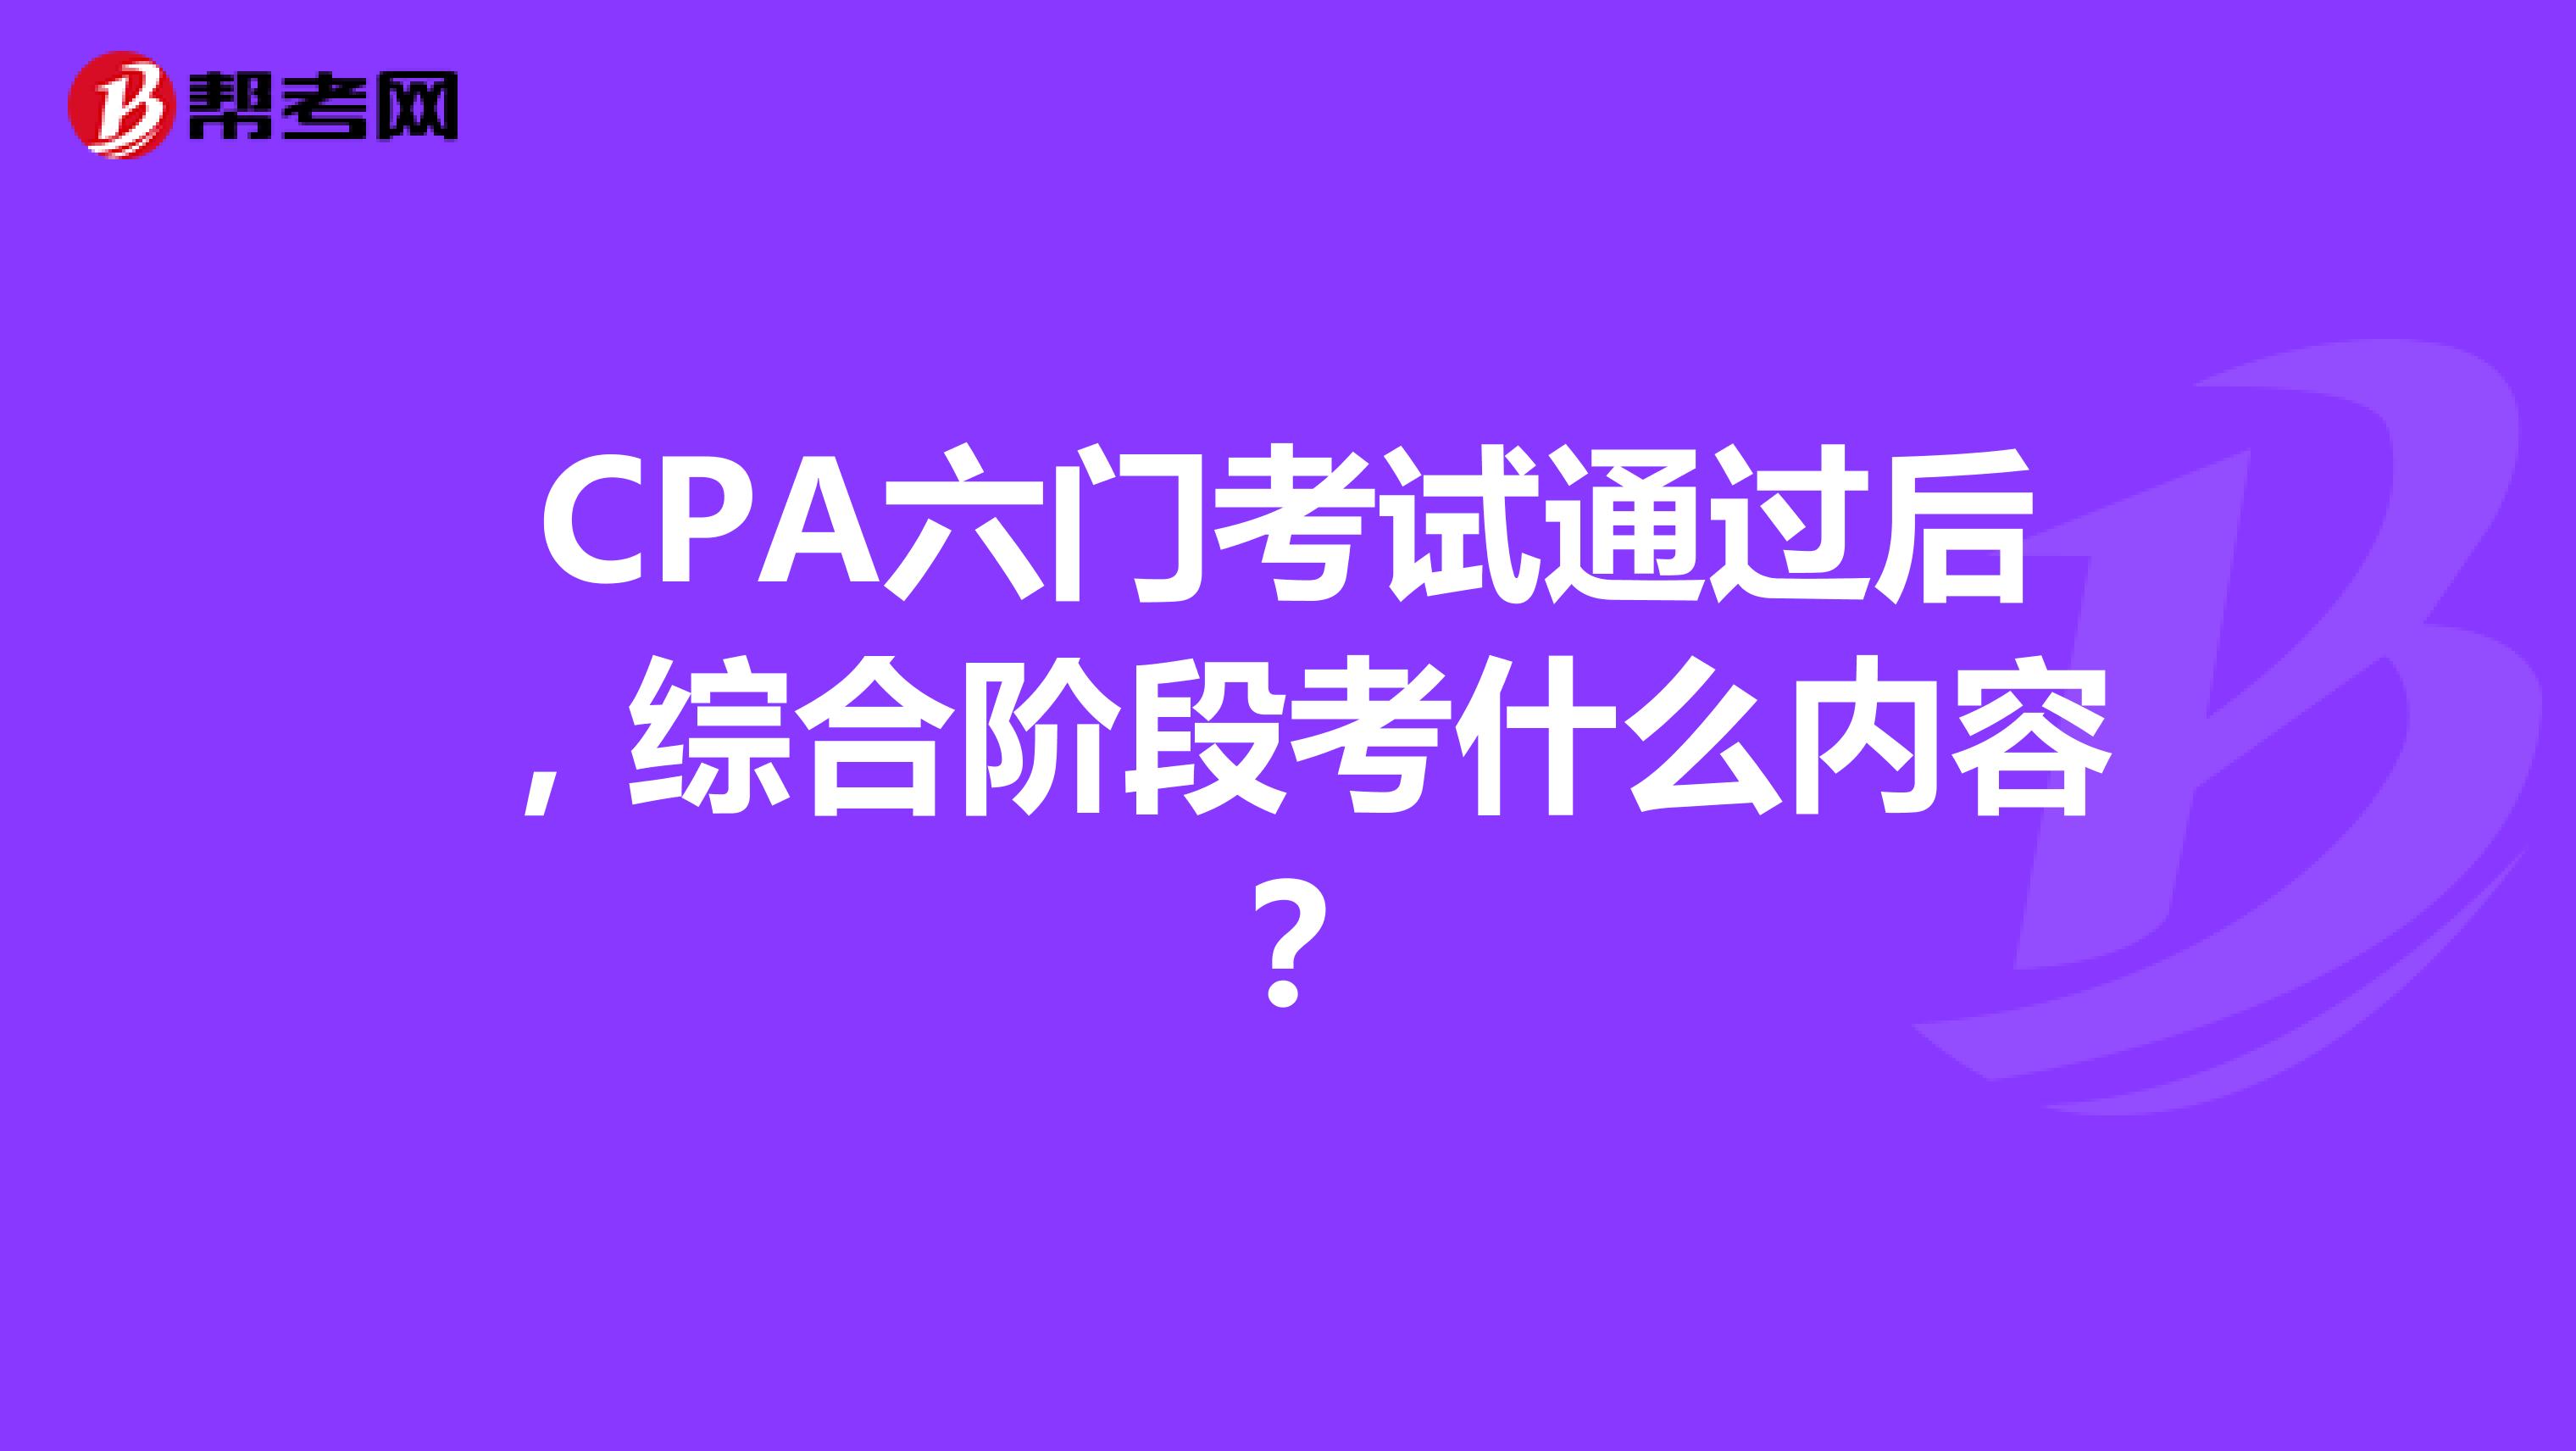 CPA六门考试通过后，综合阶段考什么内容？